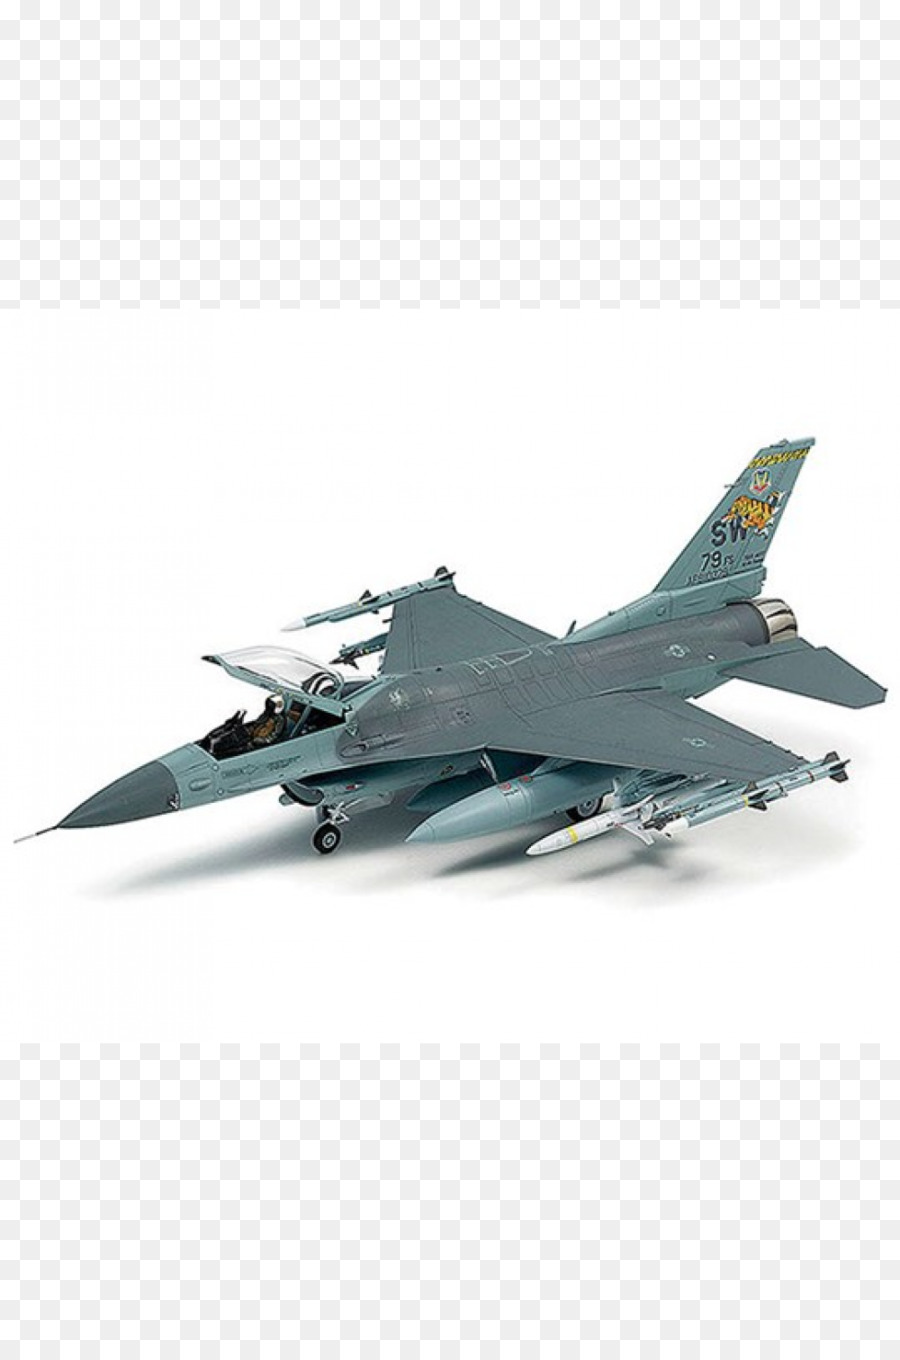 General Dynamics F-16 Fighting Falcon, modello in Plastica di Aerei Lockheed Martin F-22 Raptor 1:48 scala - aerei